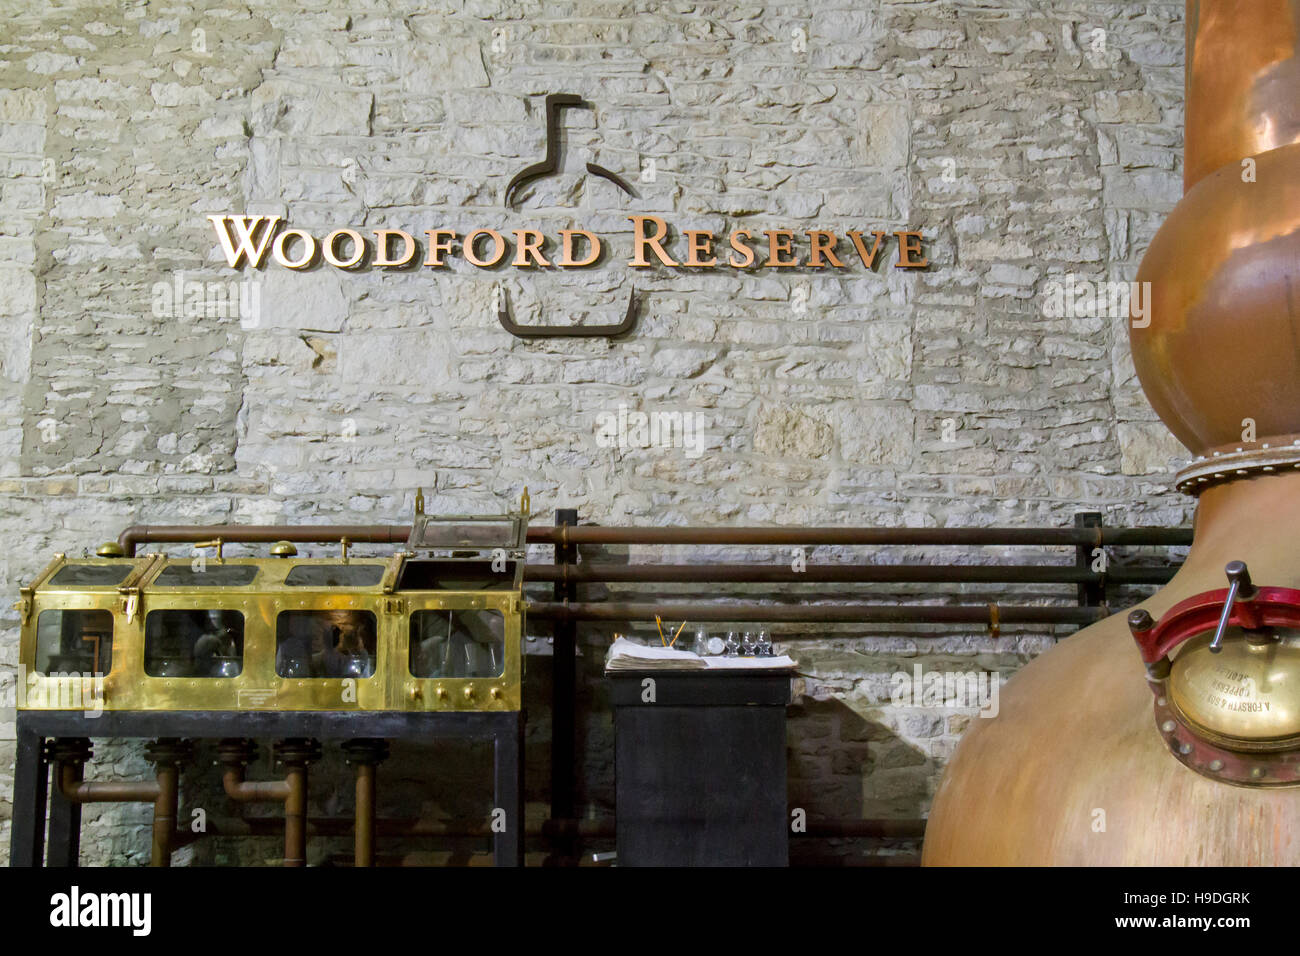 Versailles, KY, USA - 19 octobre 2016 : toujours à l'intérieur du cuivre iconique Woodford Reserve Bourbon distillerie avec signalisation et logo. Banque D'Images